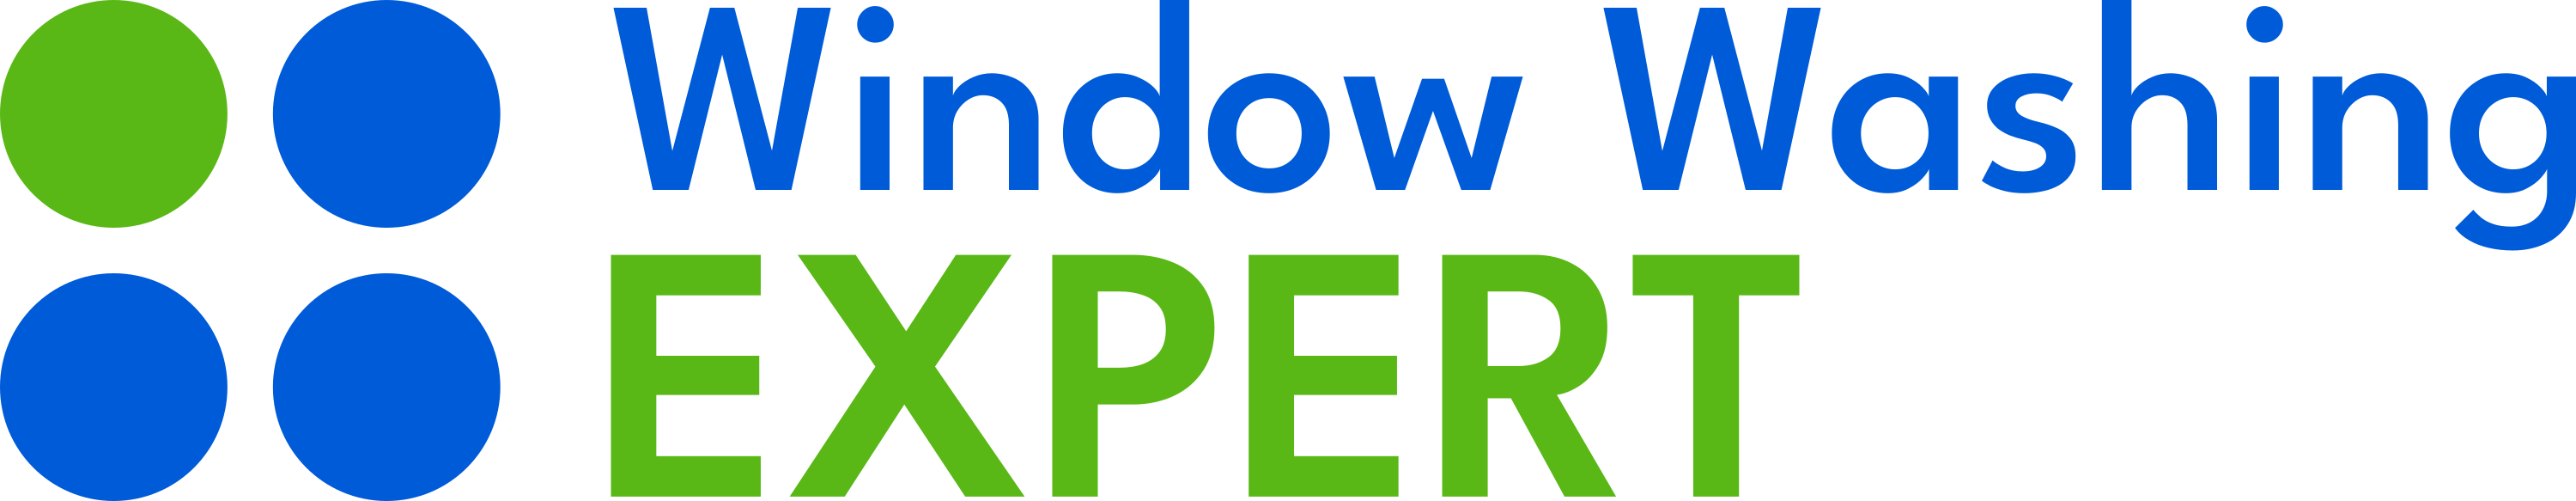 Window Washing Expert Logo